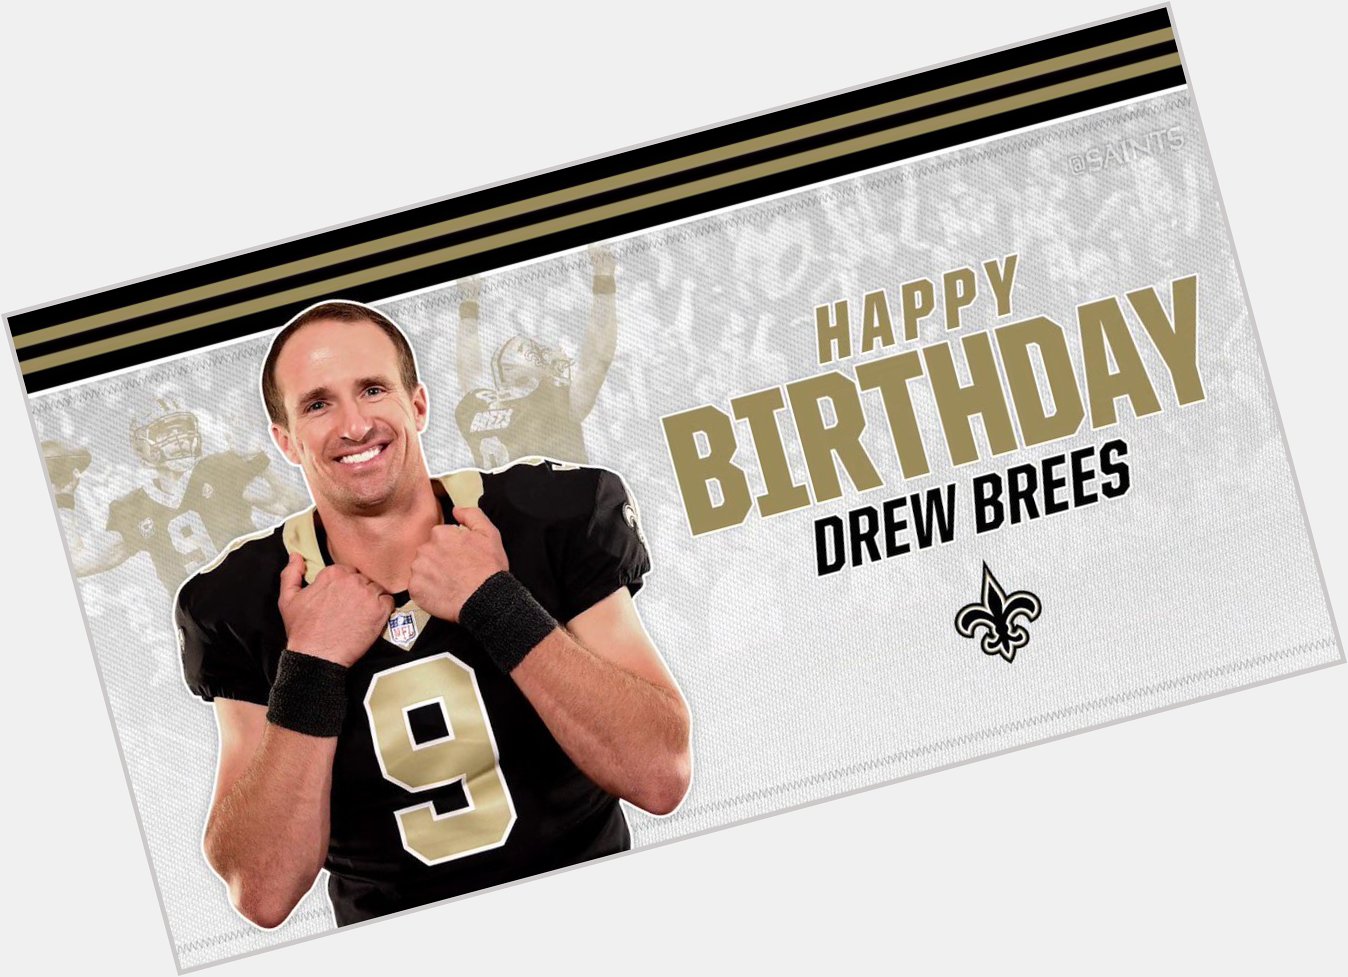 Happy birthday to the GOAT Drew Brees 